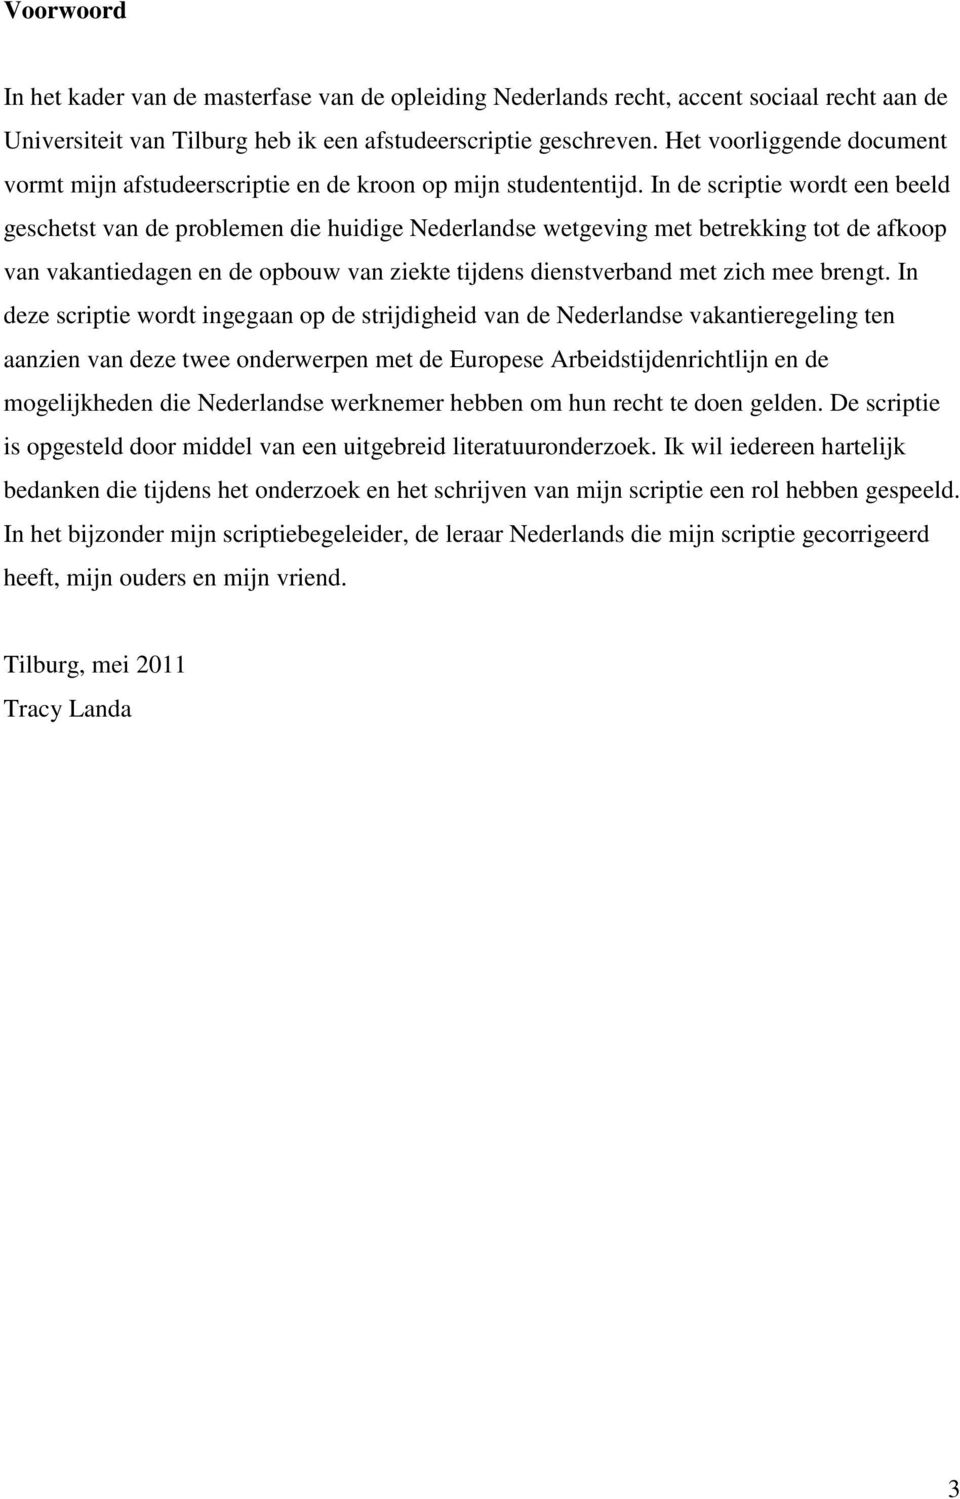 In de scriptie wordt een beeld geschetst van de problemen die huidige Nederlandse wetgeving met betrekking tot de afkoop van vakantiedagen en de opbouw van ziekte tijdens dienstverband met zich mee